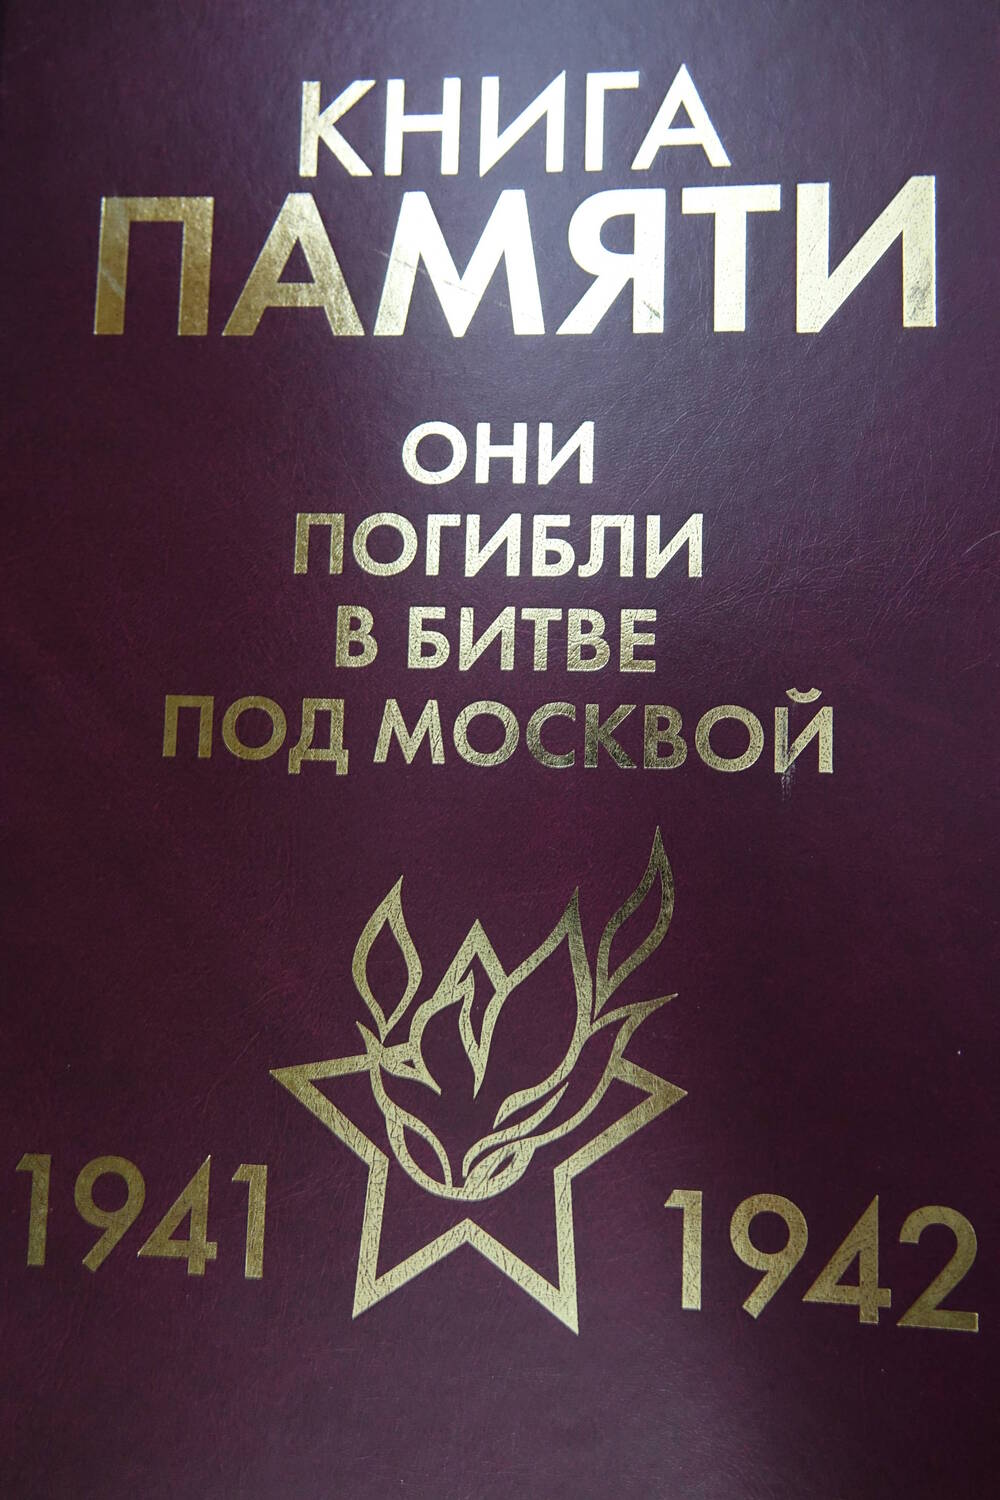 Книга Памяти «Они погибли в битве под Москвой     1941-1942гг.» Том 12 «Р»